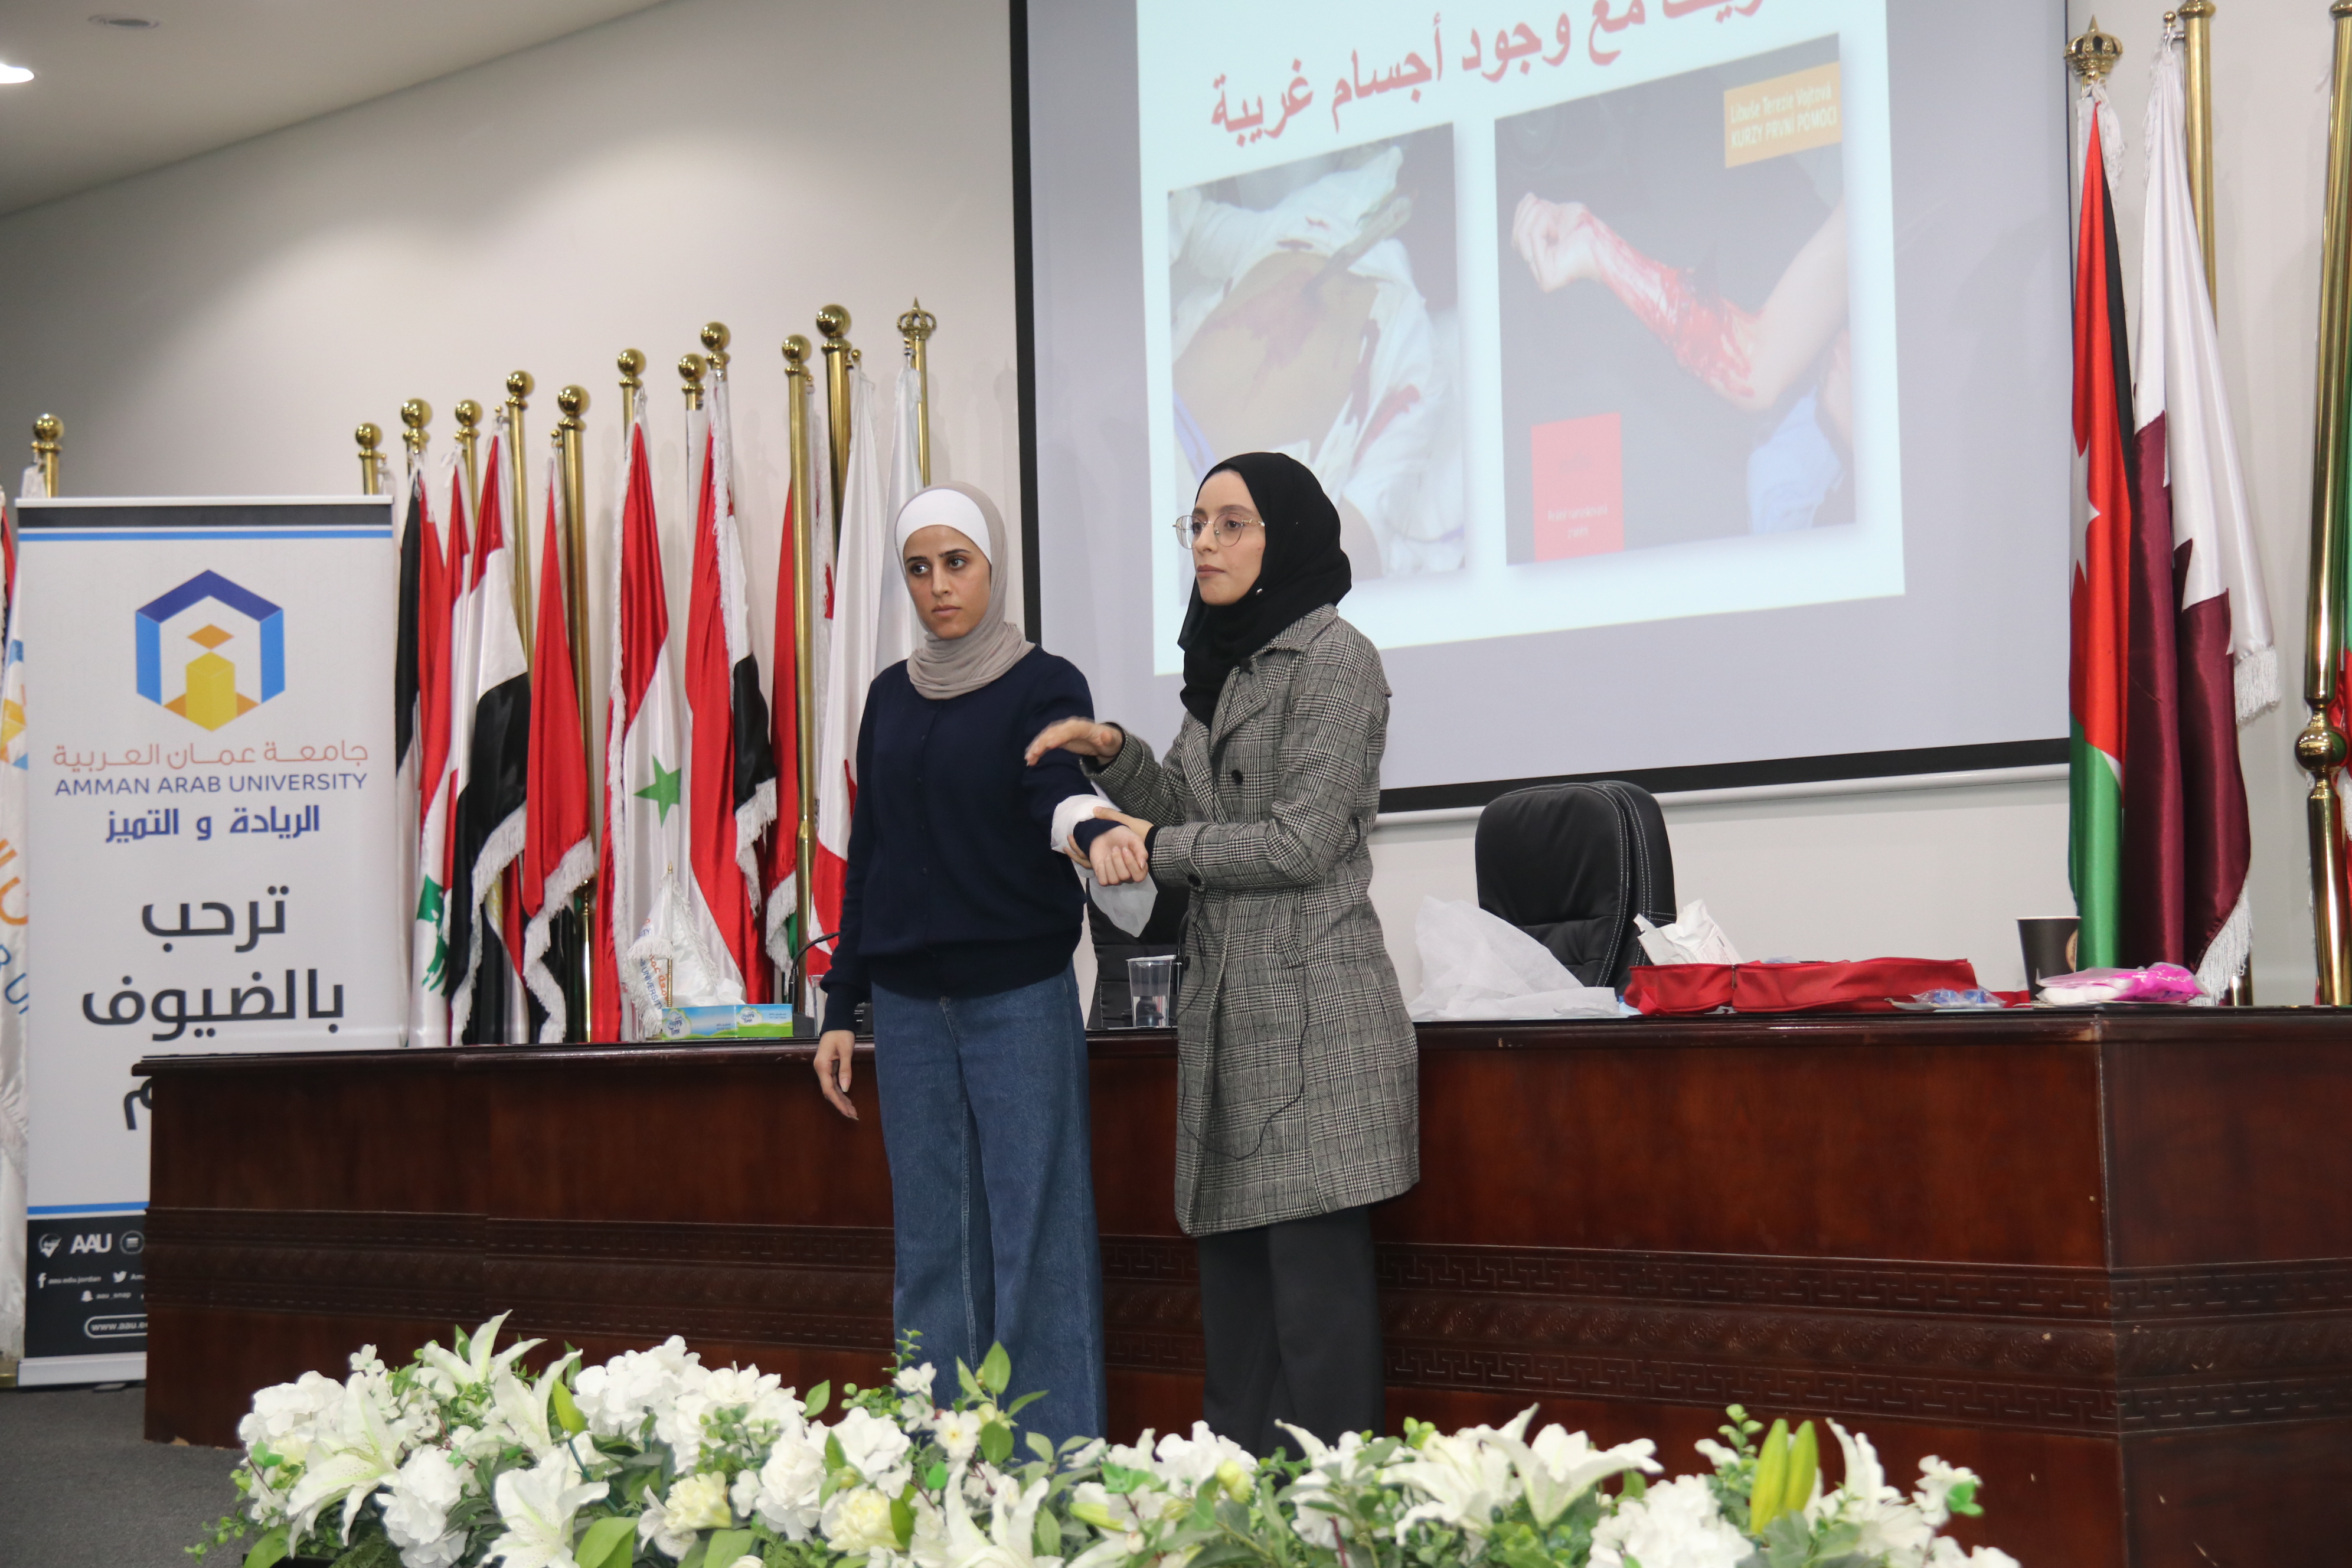 محاضرة توعية في "عمان العربية" حول الإسعافات الأولية6